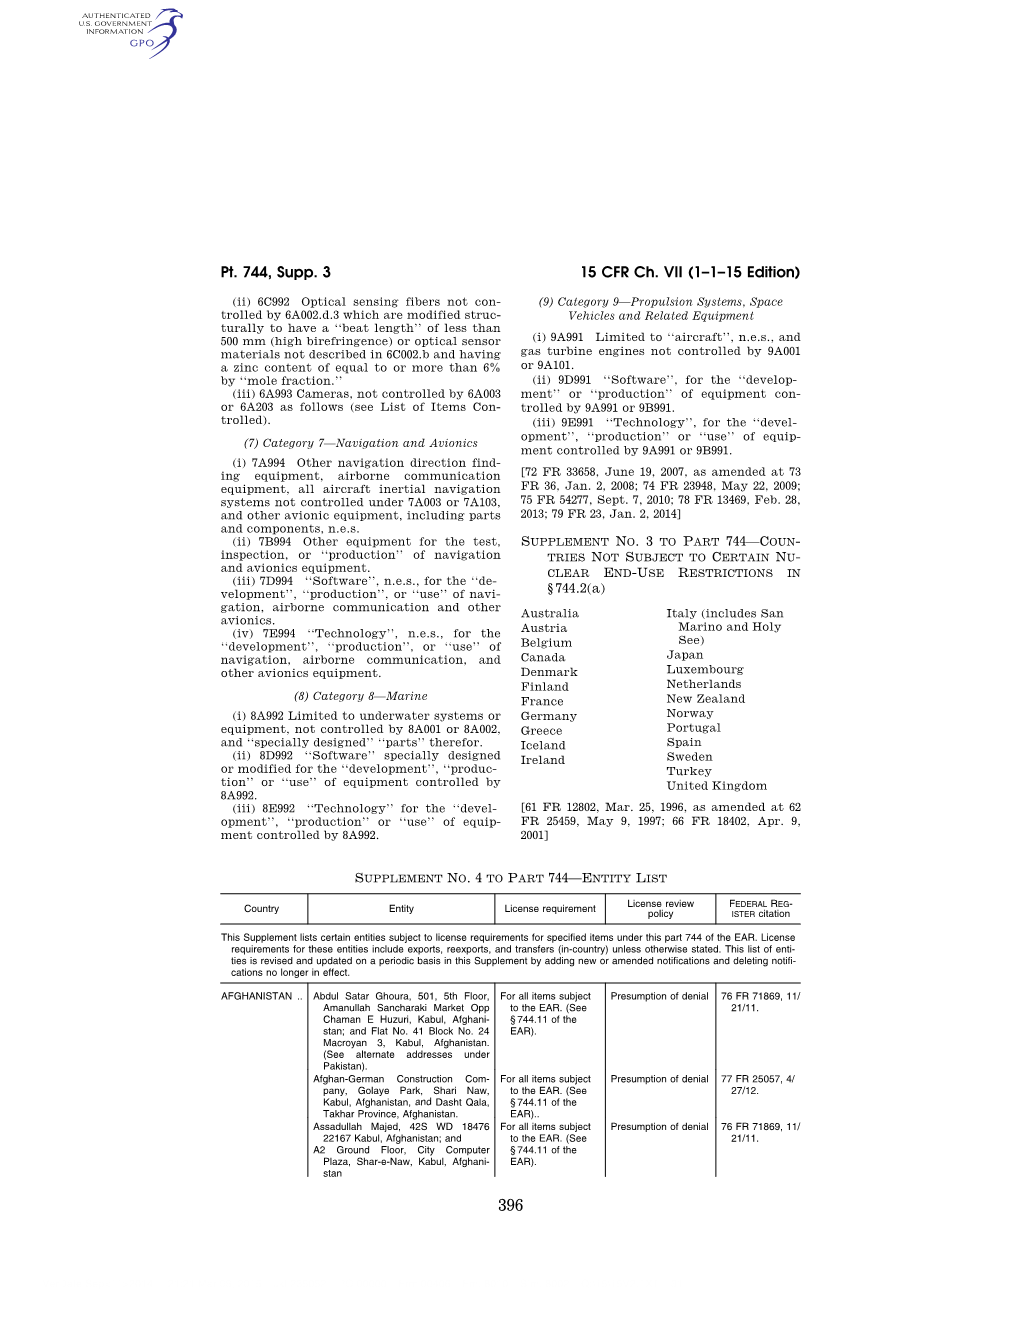 15 CFR Ch. VII (1–1–15 Edition) Pt. 744, Supp. 3